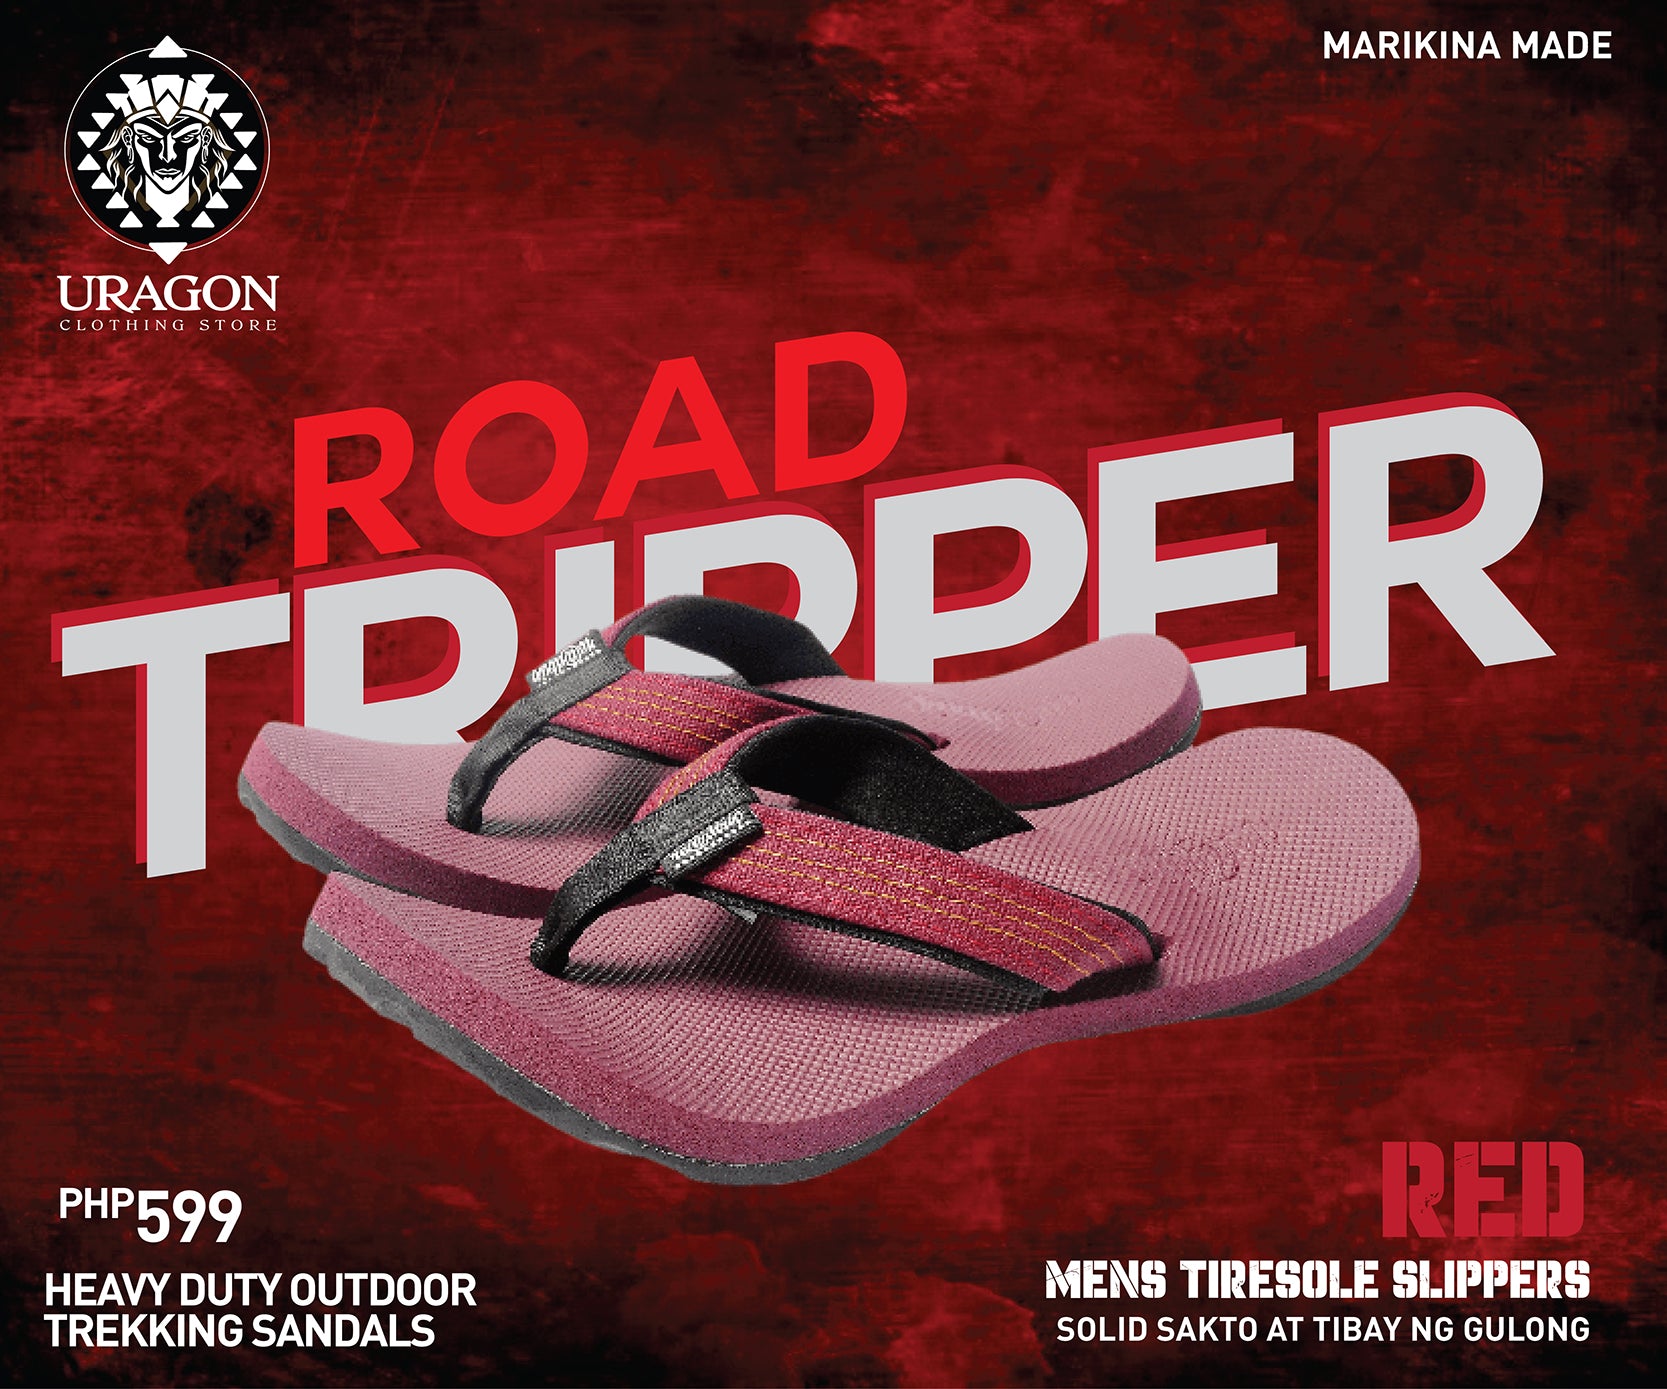 Uragon Road Tripper Tiresole Slipper Red